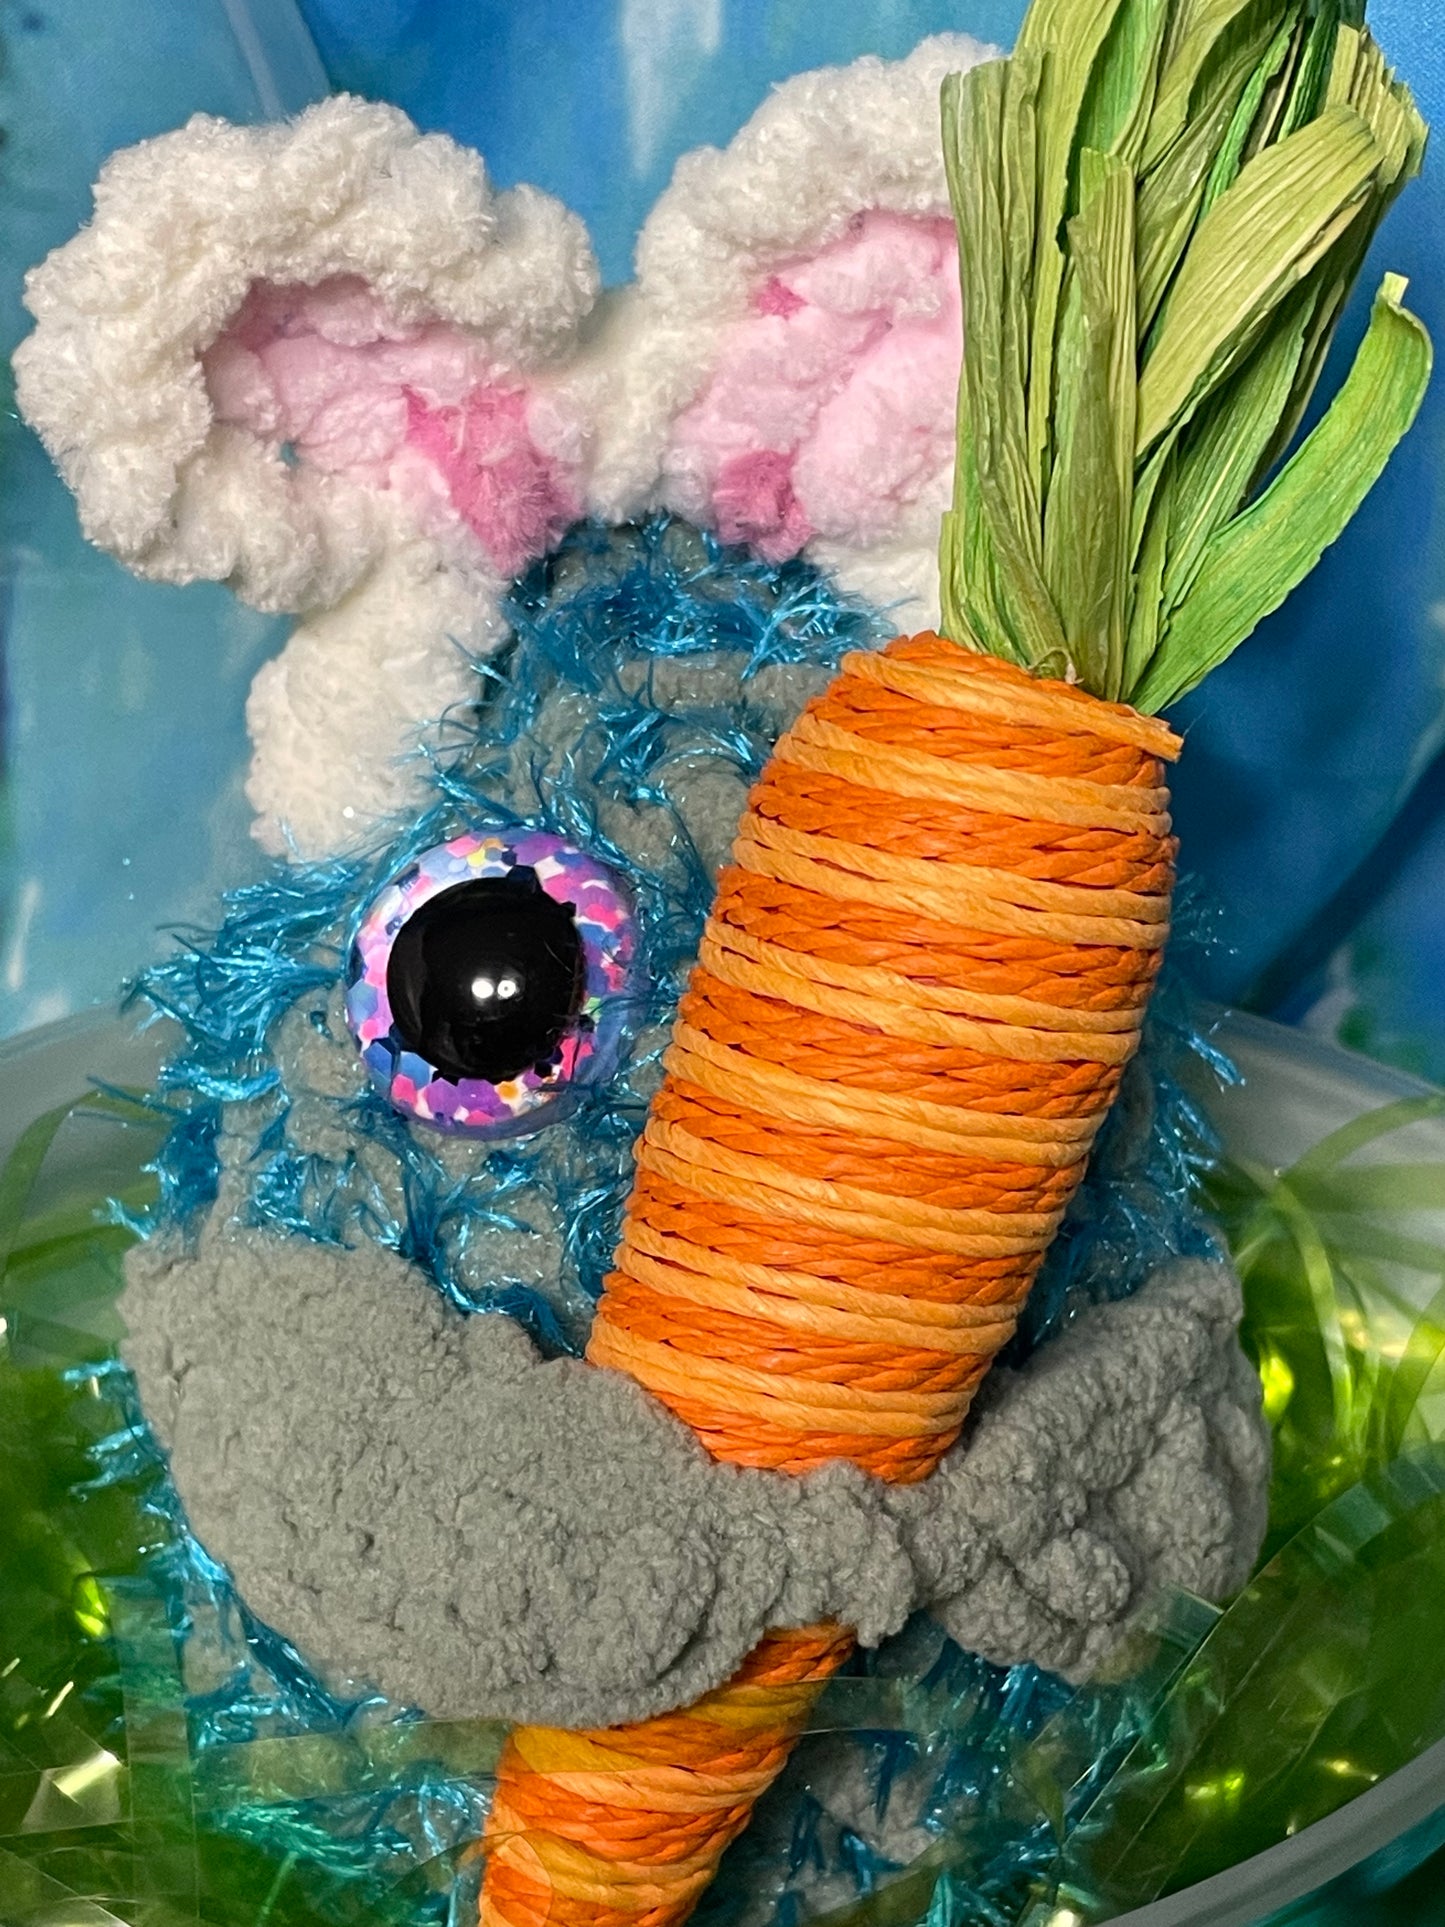 Bunny “Spring” Nugs (Holiday Special)